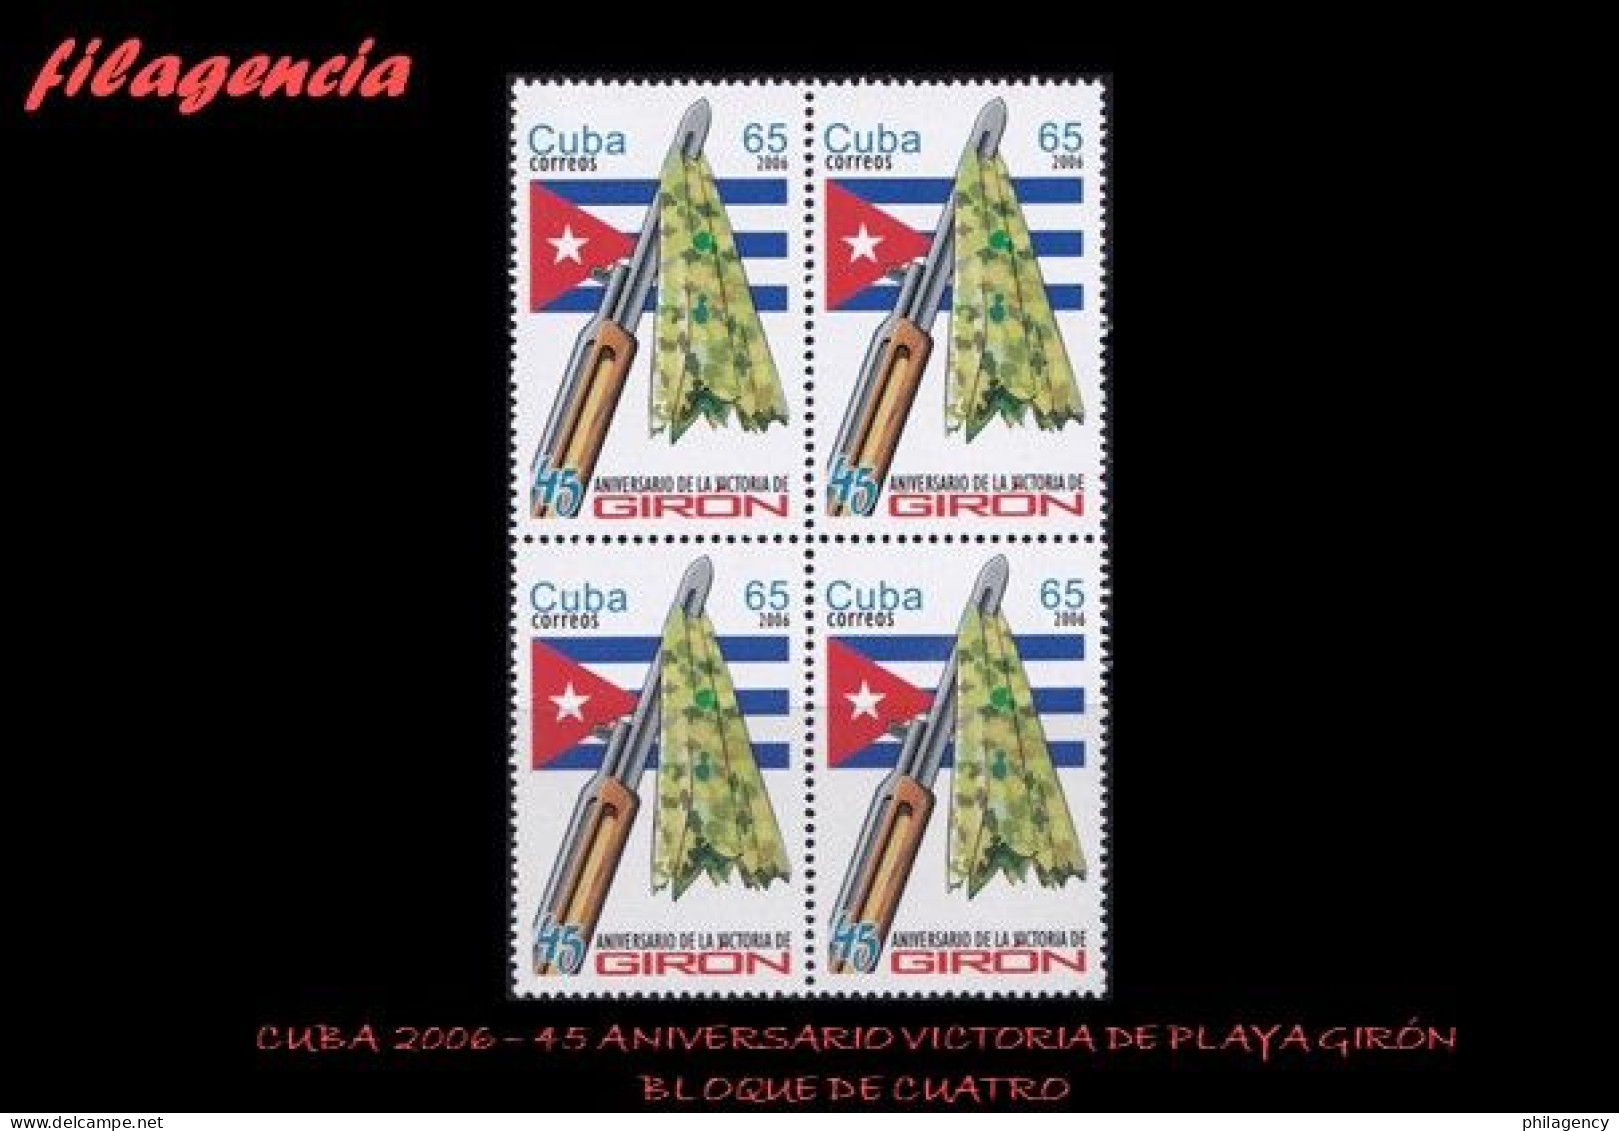 CUBA. BLOQUES DE CUATRO. 2006-09 45 ANIVERSARIO DE LA VICTORIA DE PLAYA GIRÓN - Nuevos